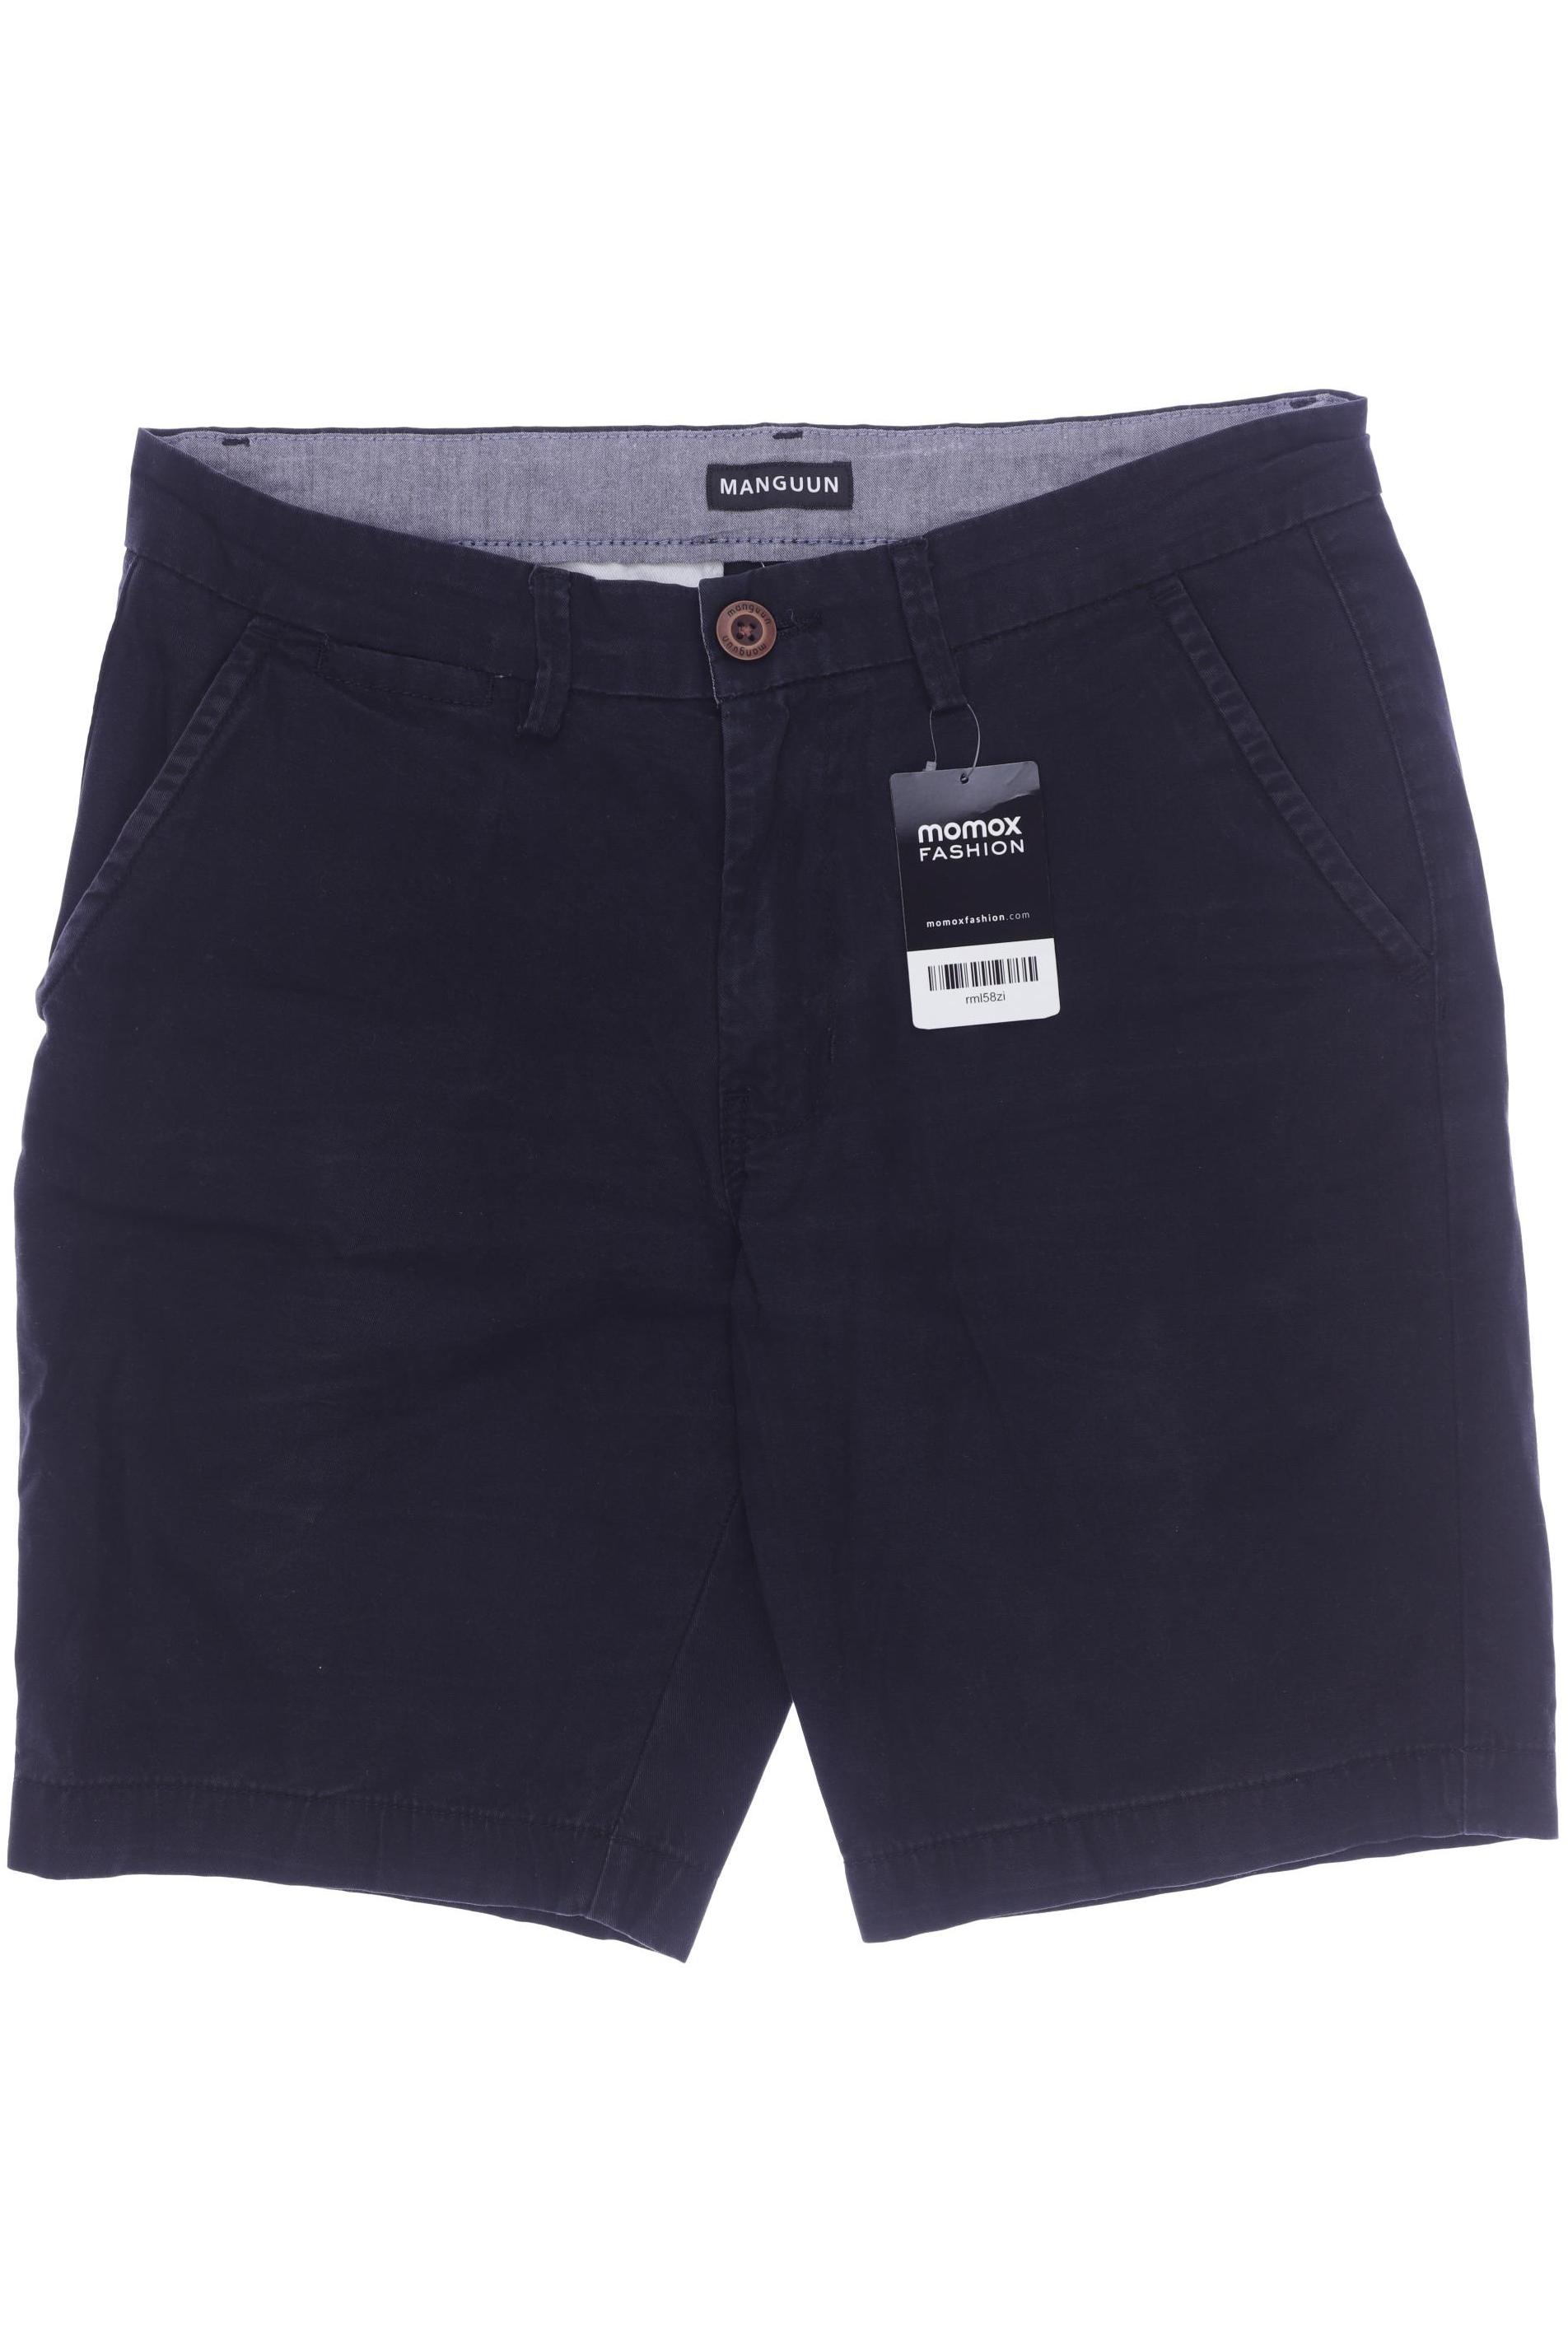 Manguun Herren Shorts, schwarz, Gr. 50 von Manguun